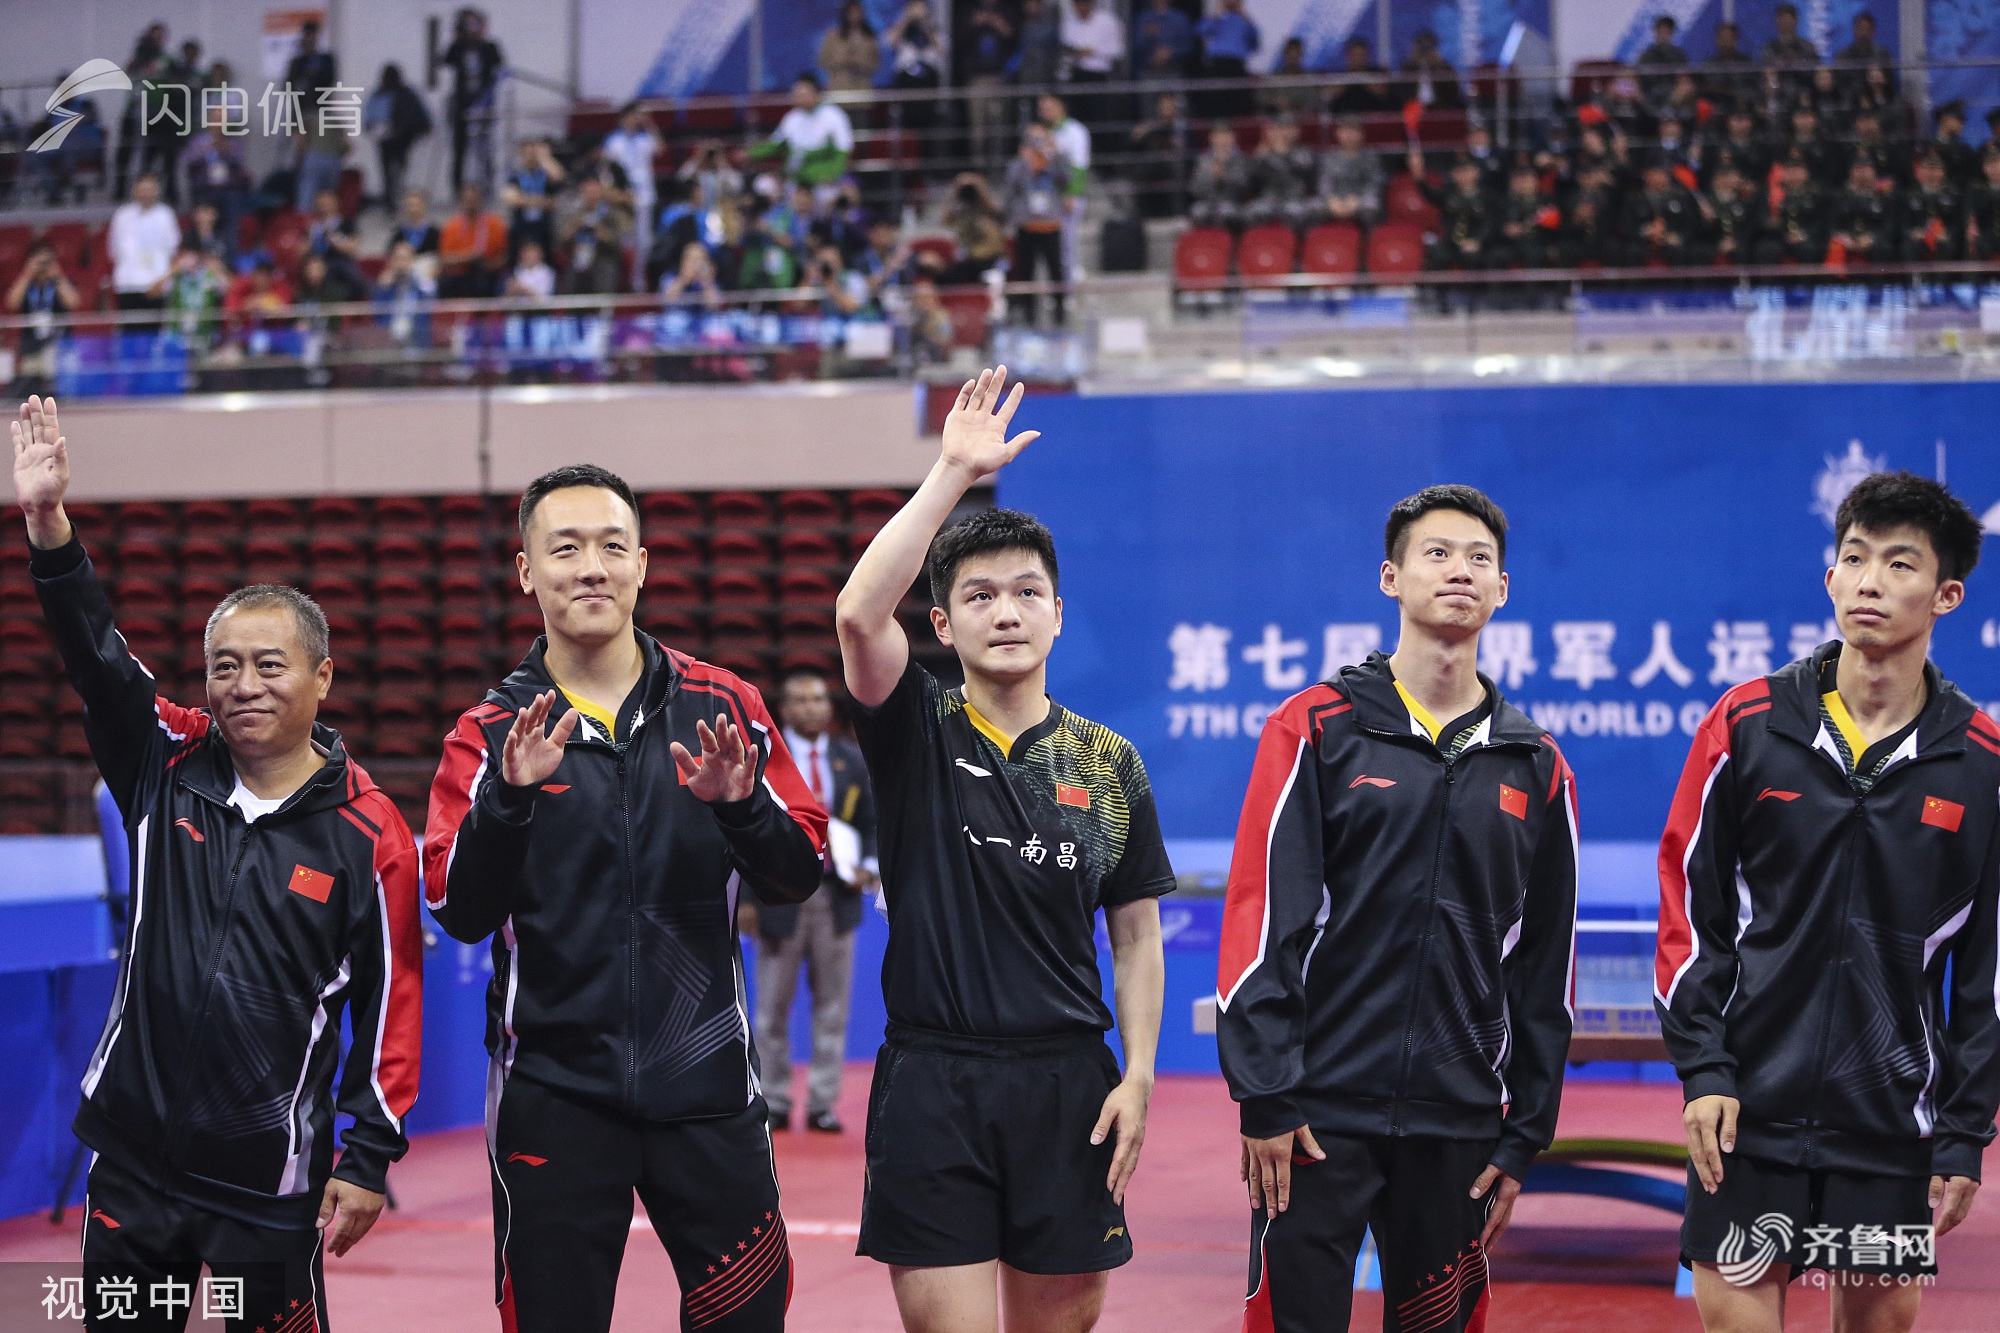 主教练王涛率领四名队员樊振东,周雨,周恺,徐晨皓赛后向观众致意.